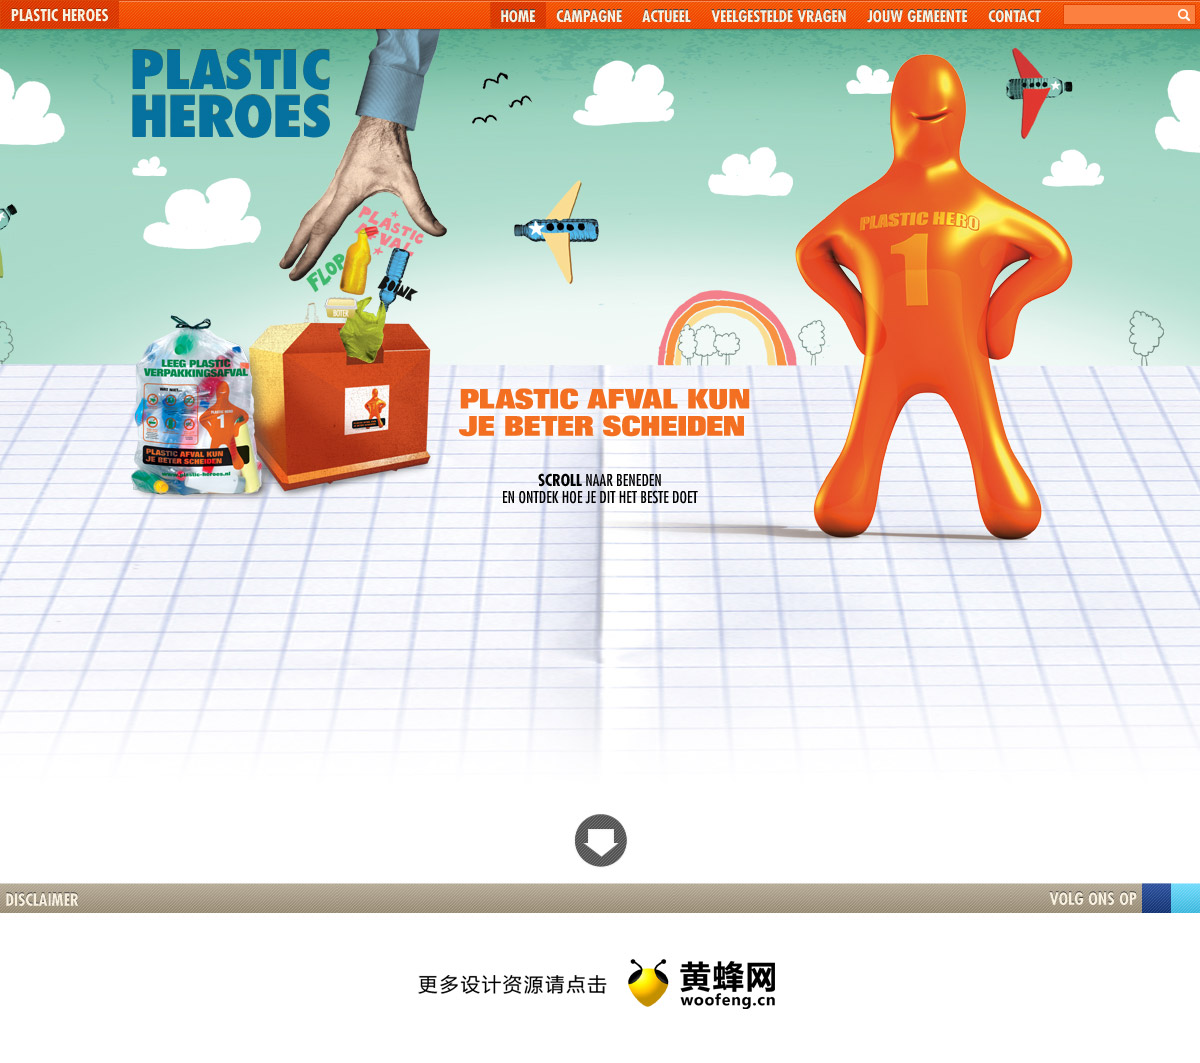 Plastic Heroes塑料包装，来源自黄蜂网https://woofeng.cn/web/